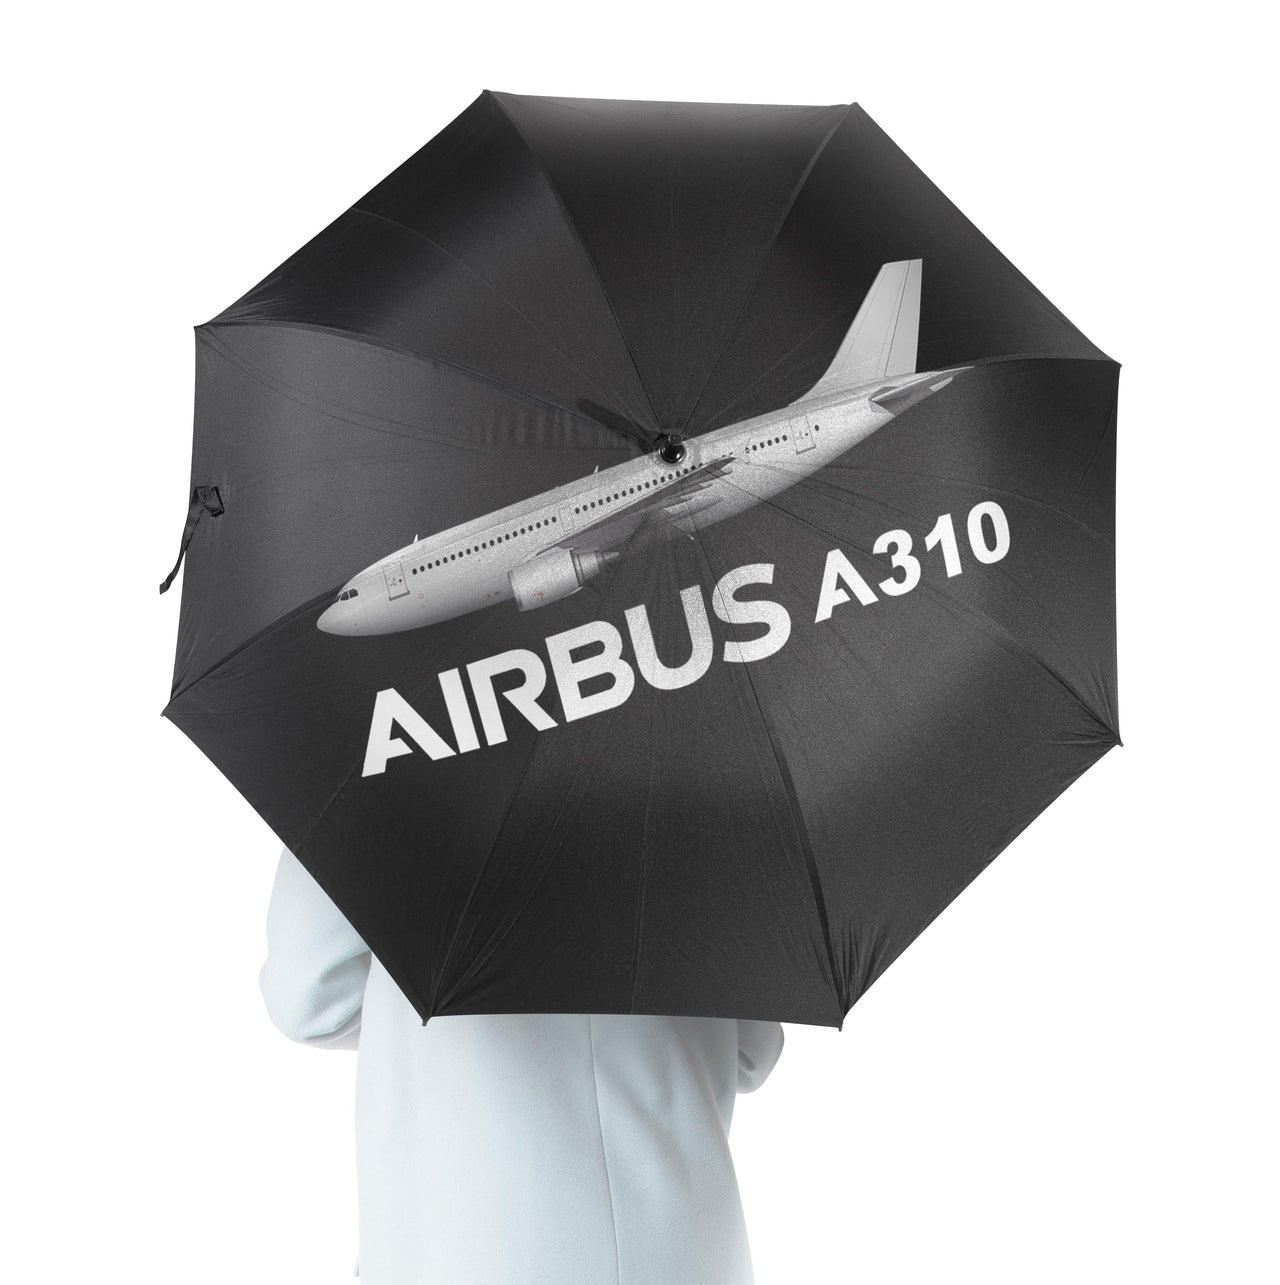 The Airbus A310 Designed Umbrella